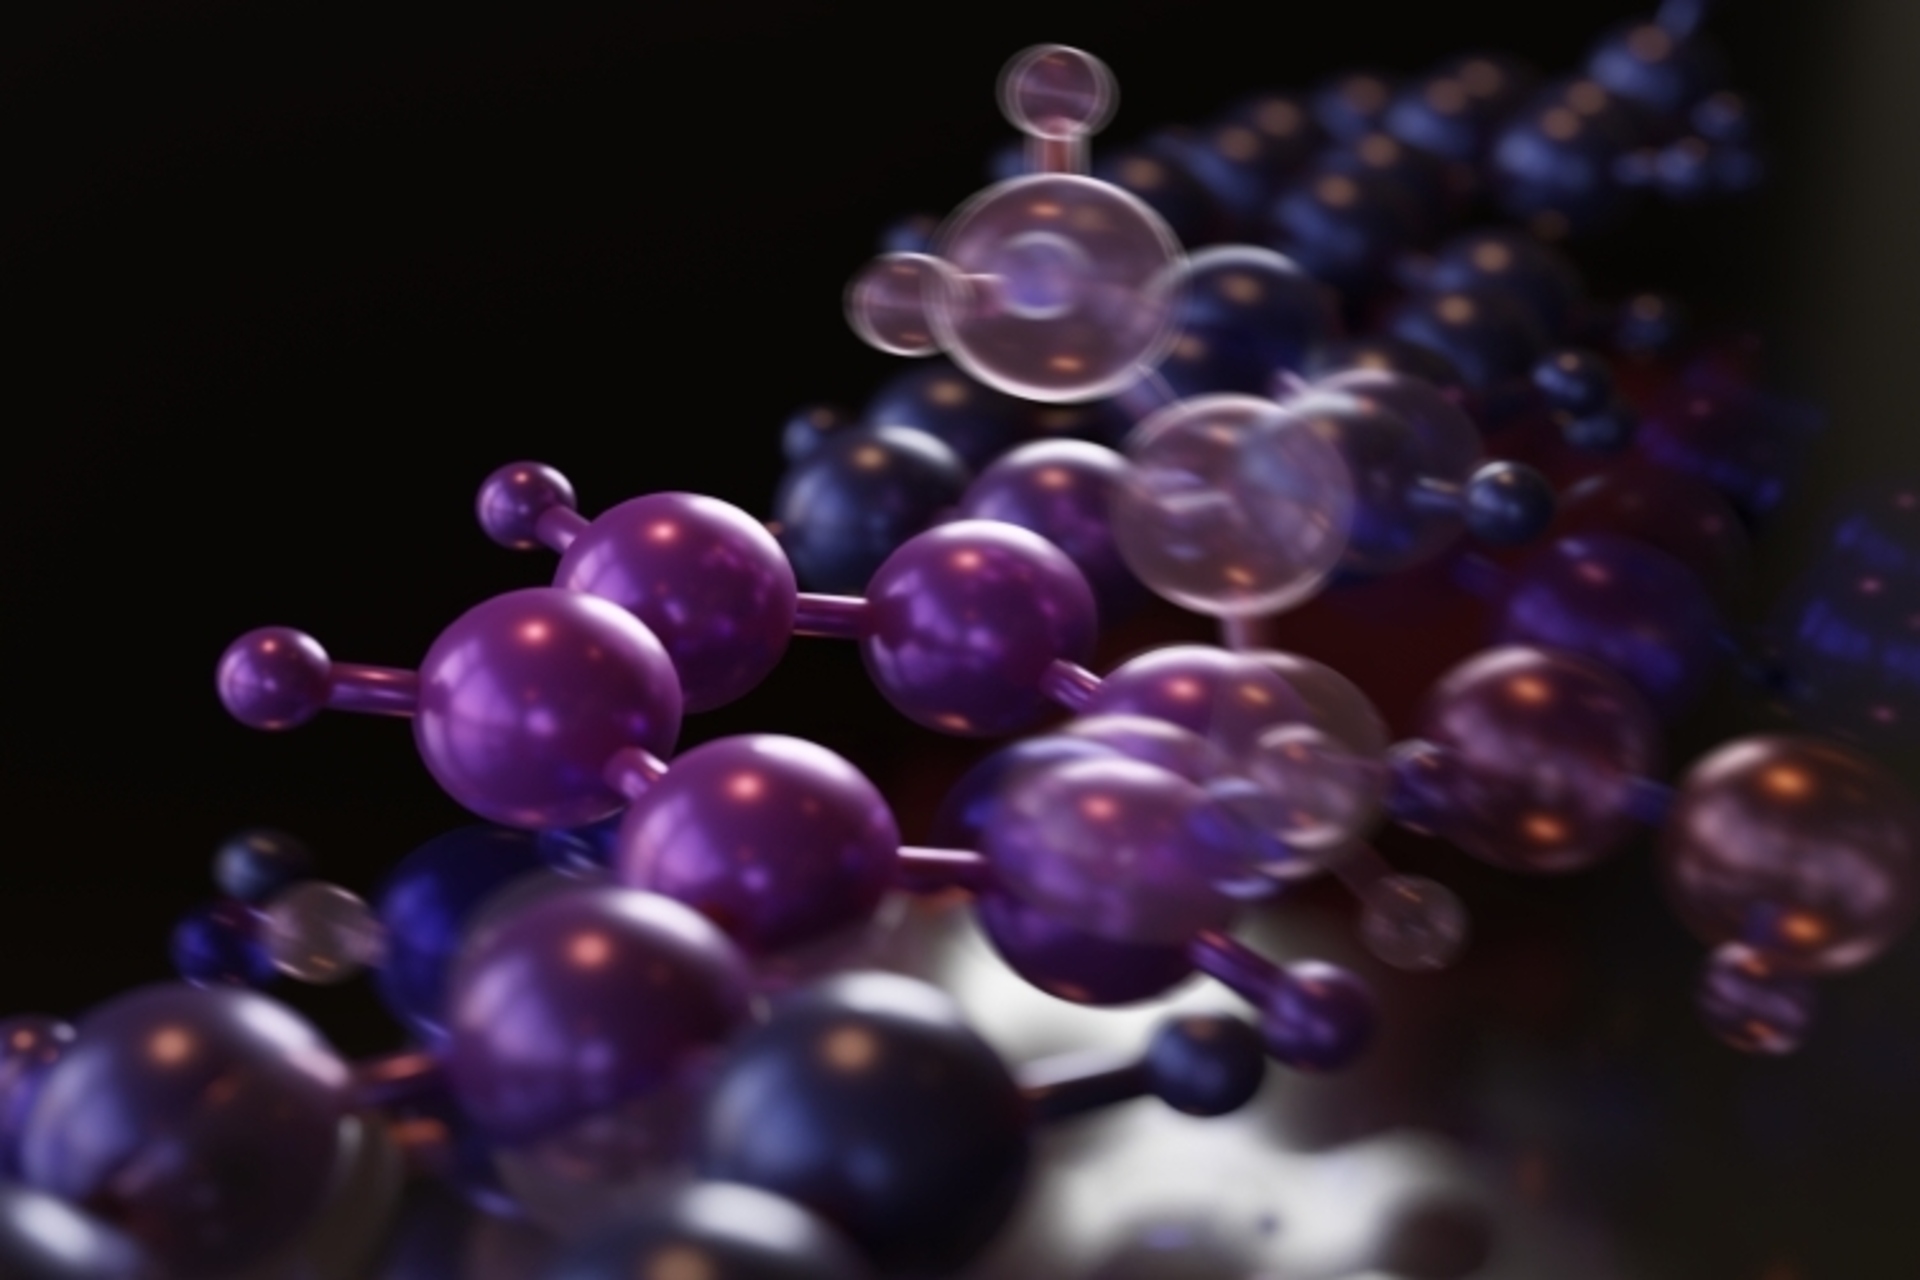 ახალი ქიმია: მხატვრის მიერ 3+3-ციკლოდიფუზია აღმოაჩინეს EMPA-ს "Nanotech@Surfaces" ლაბორატორიაში შვეიცარიაში